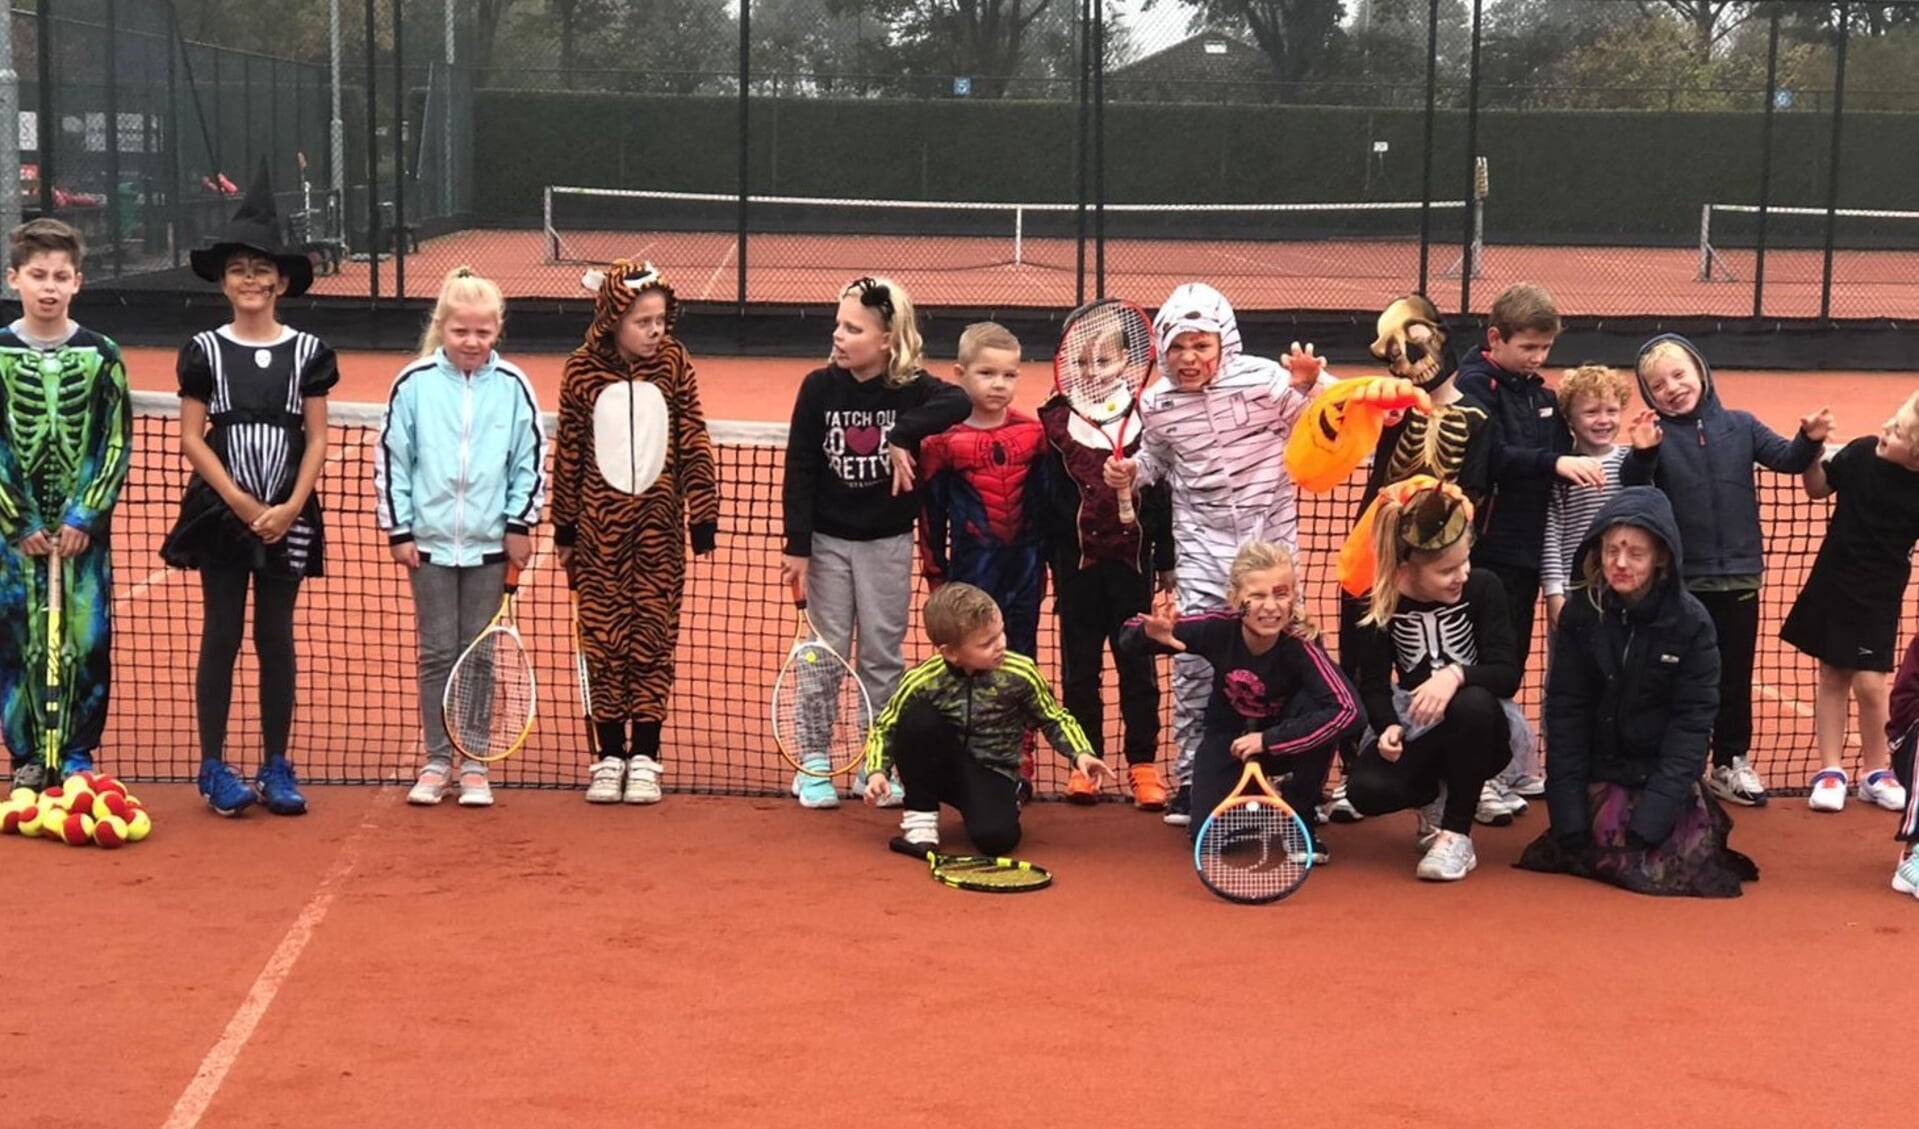 Voor de jongste jeugd heeft Tautenburg op vrijdag 30 oktober een halloween-event georganiseerd. 20 Kinderen hebben verkleed op het tennispark spellen gedaan, getennist en gezocht naar een griezelschat...in de buitenlucht... met 1,5 m afstand. 